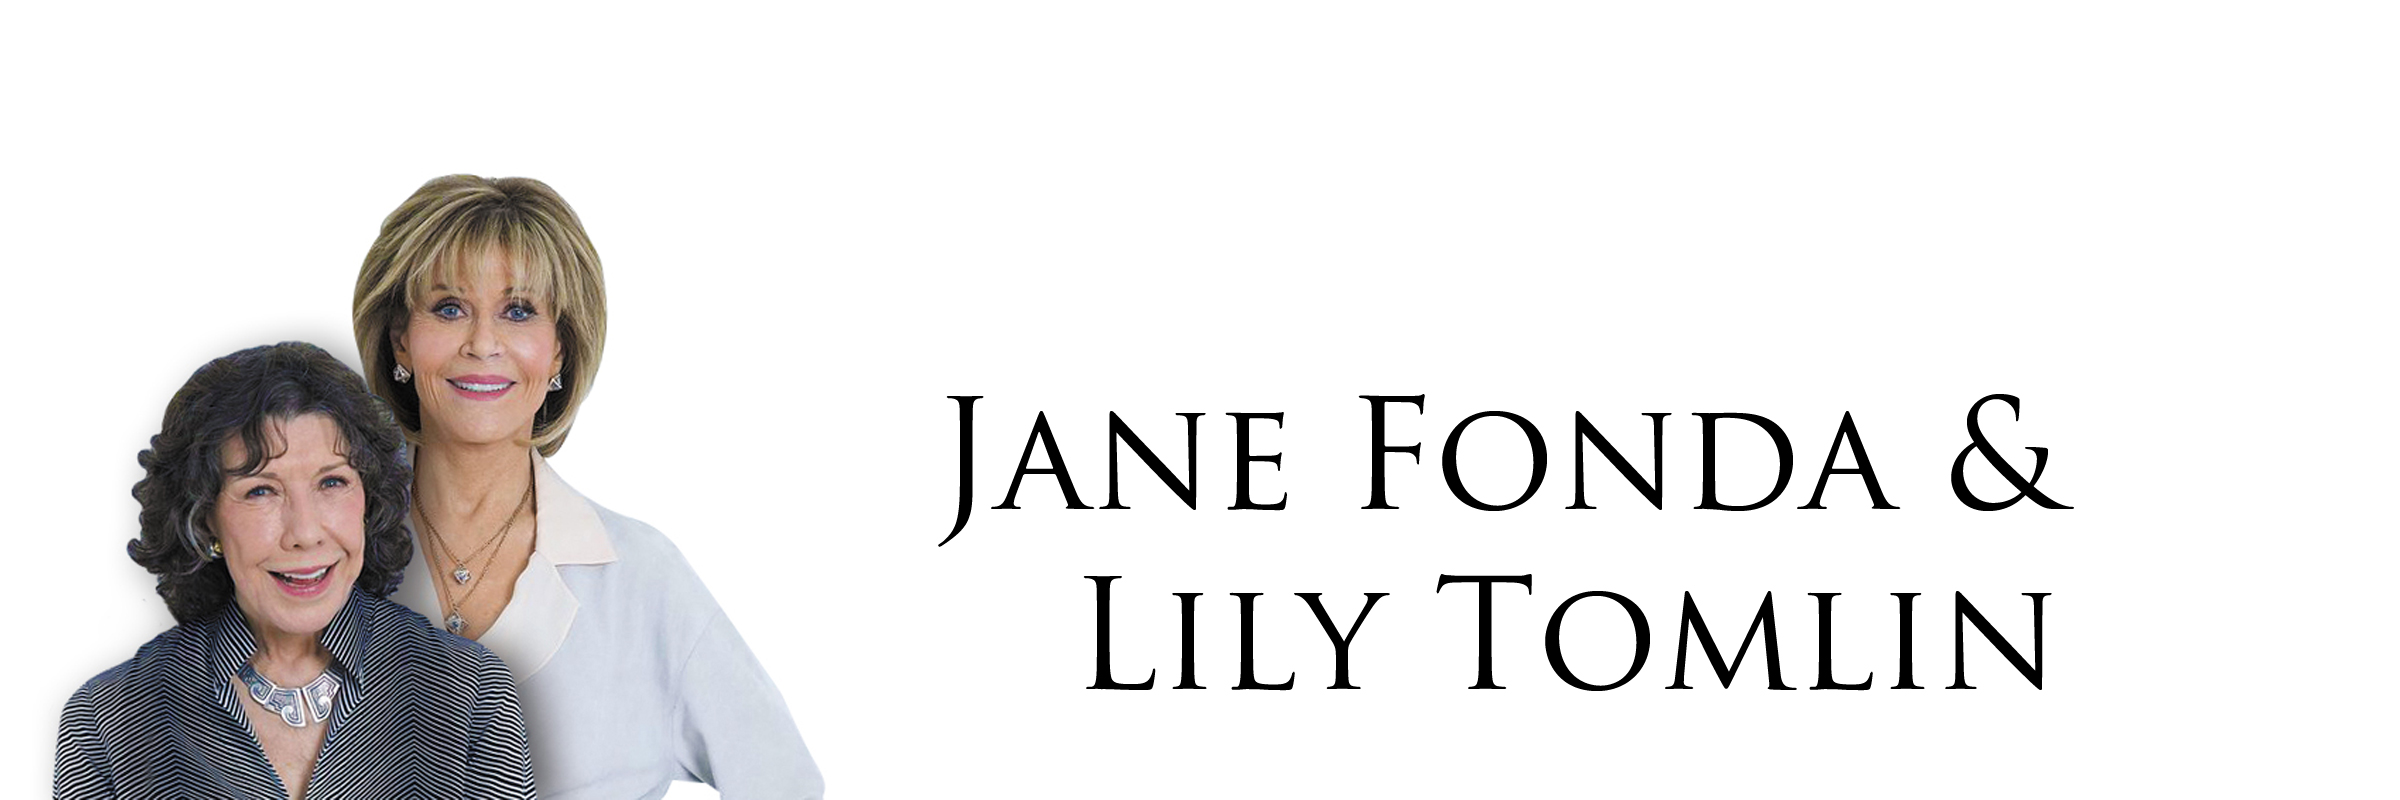 Jane Fonda & Lily Tomlin